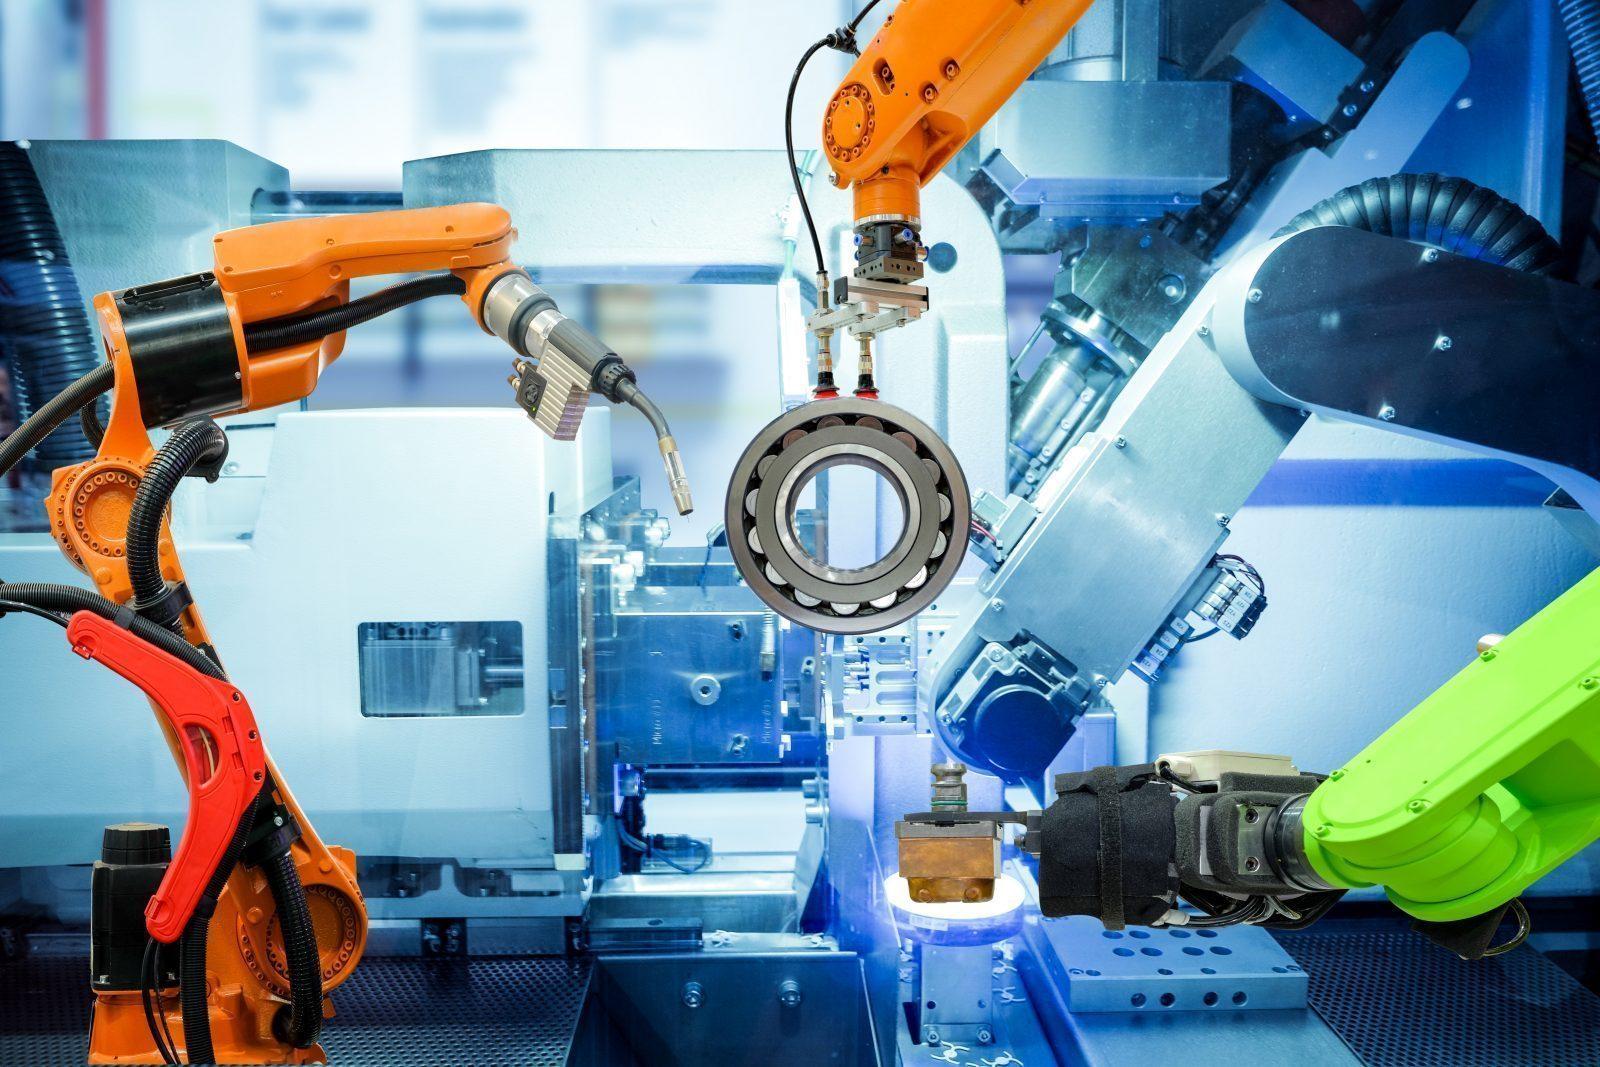 Công nghệ tự động hóa trong ngành công nghiệp chế tạo máy đại diện cho sự tiến bộ của kỹ thuật hiện đại